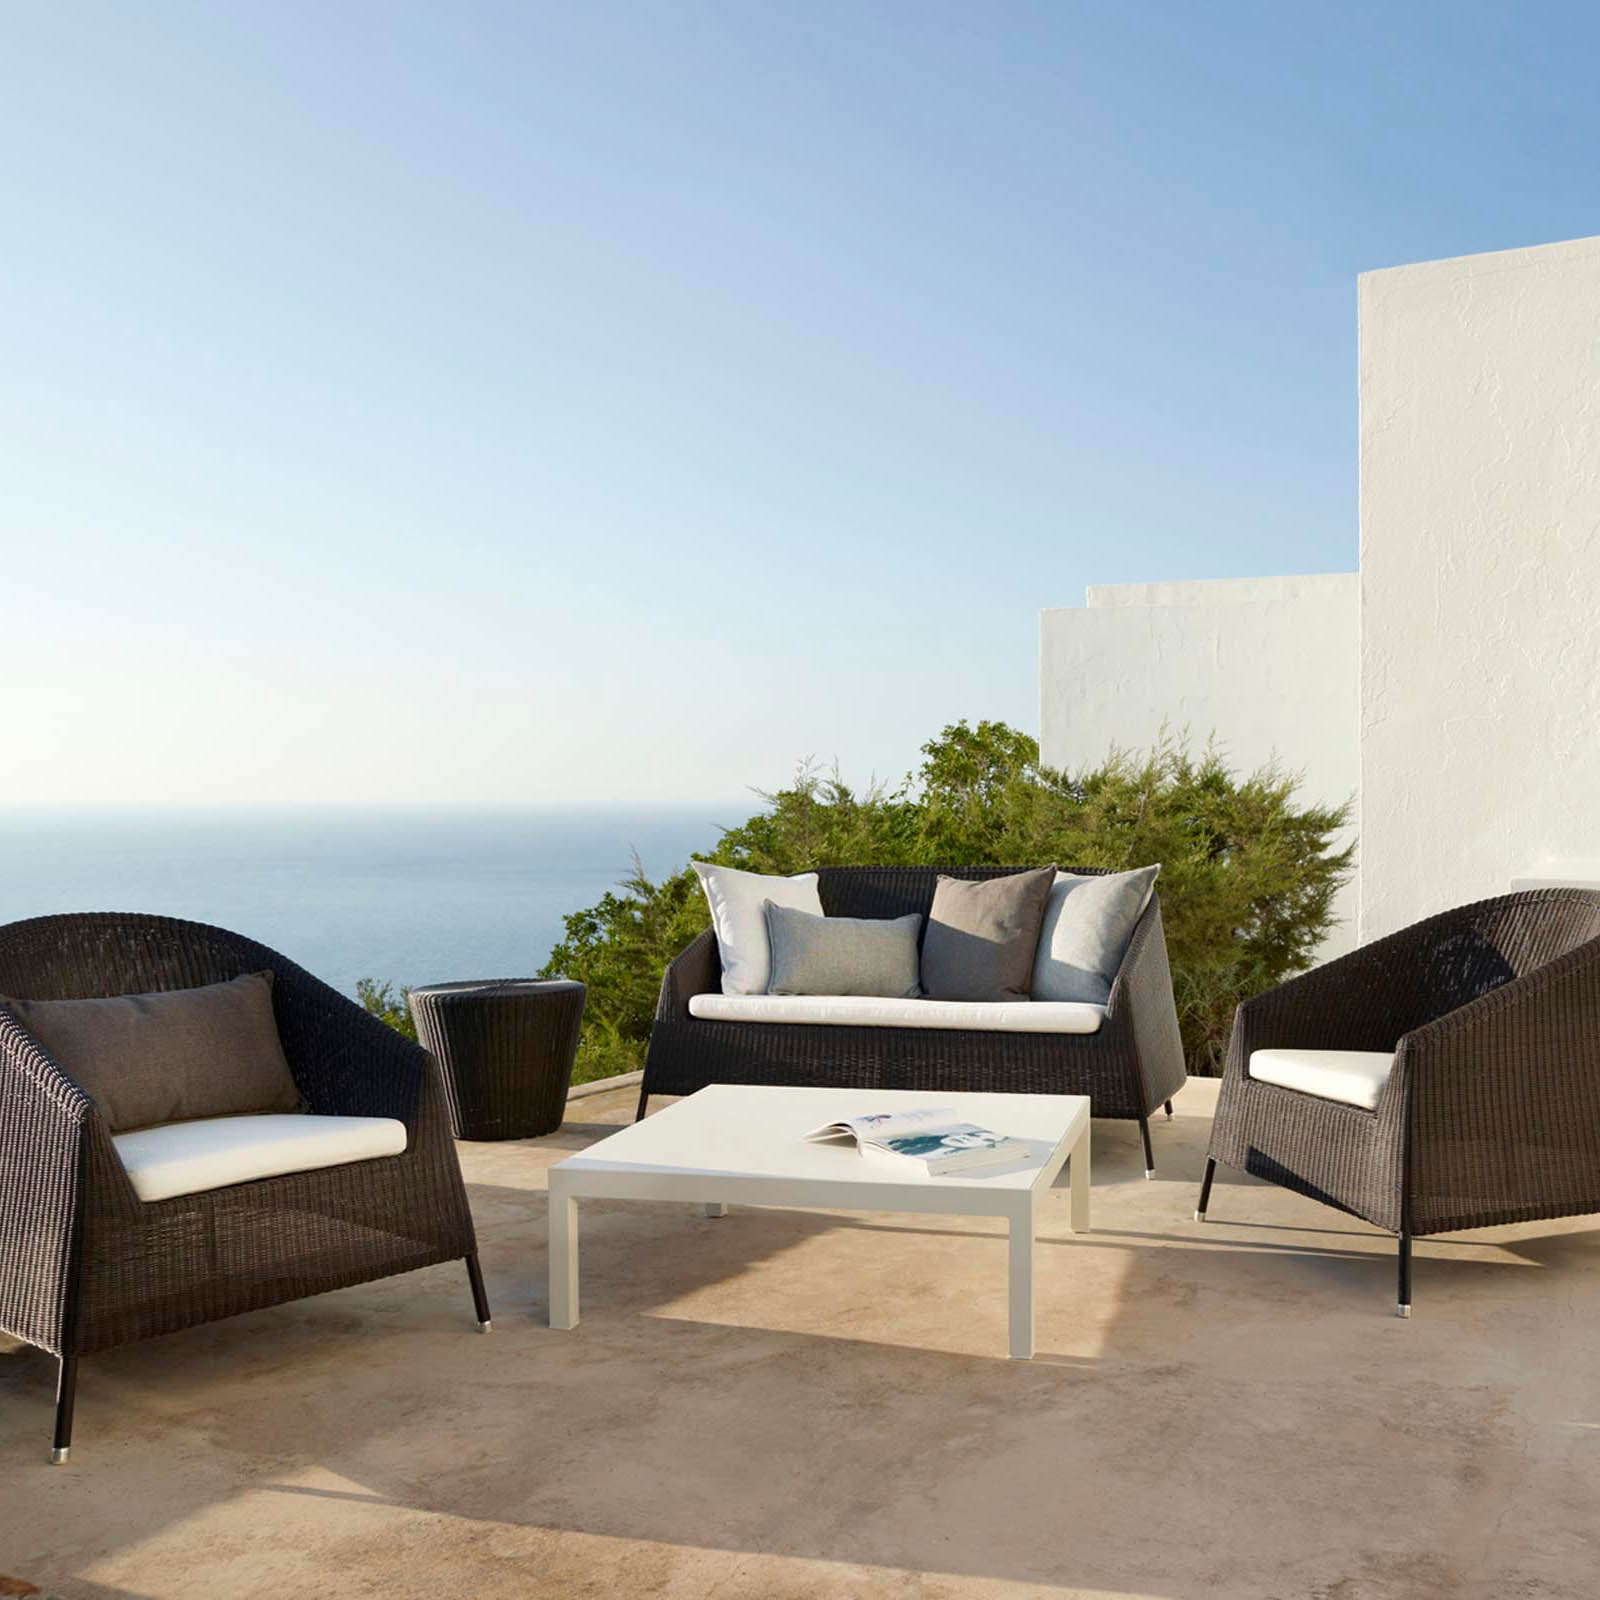 Kingston 2-Sitzer Sofa aus Cane-line Weave in White Grey mit Kissen aus Cane-line Natté in Grey